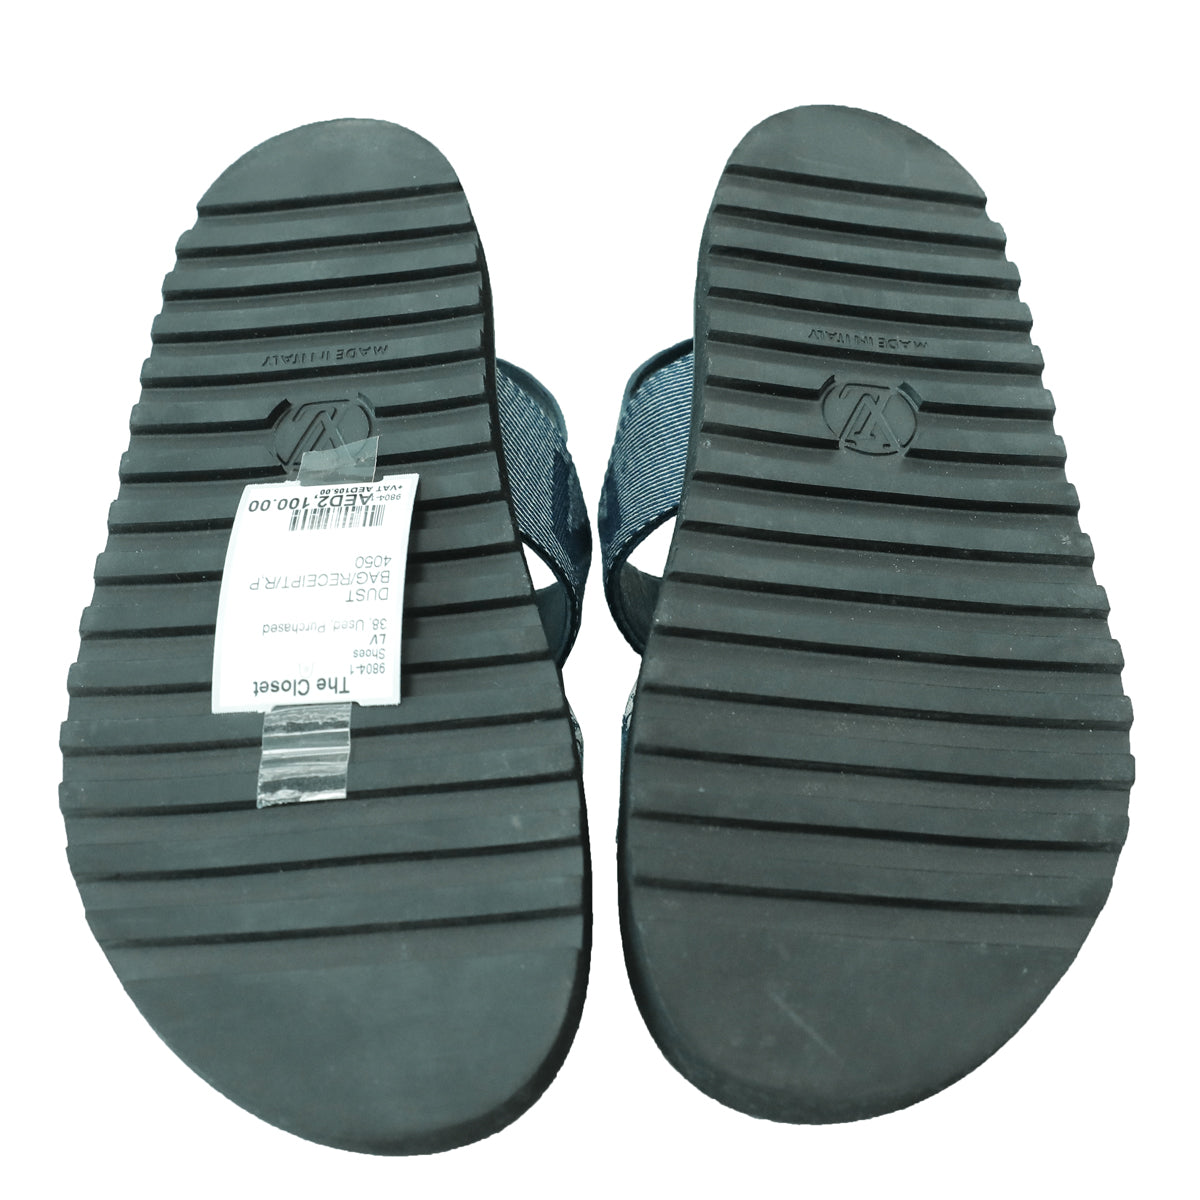 Louis Vuitton, Shoes, Lv Sandals Size 38 Great Condition